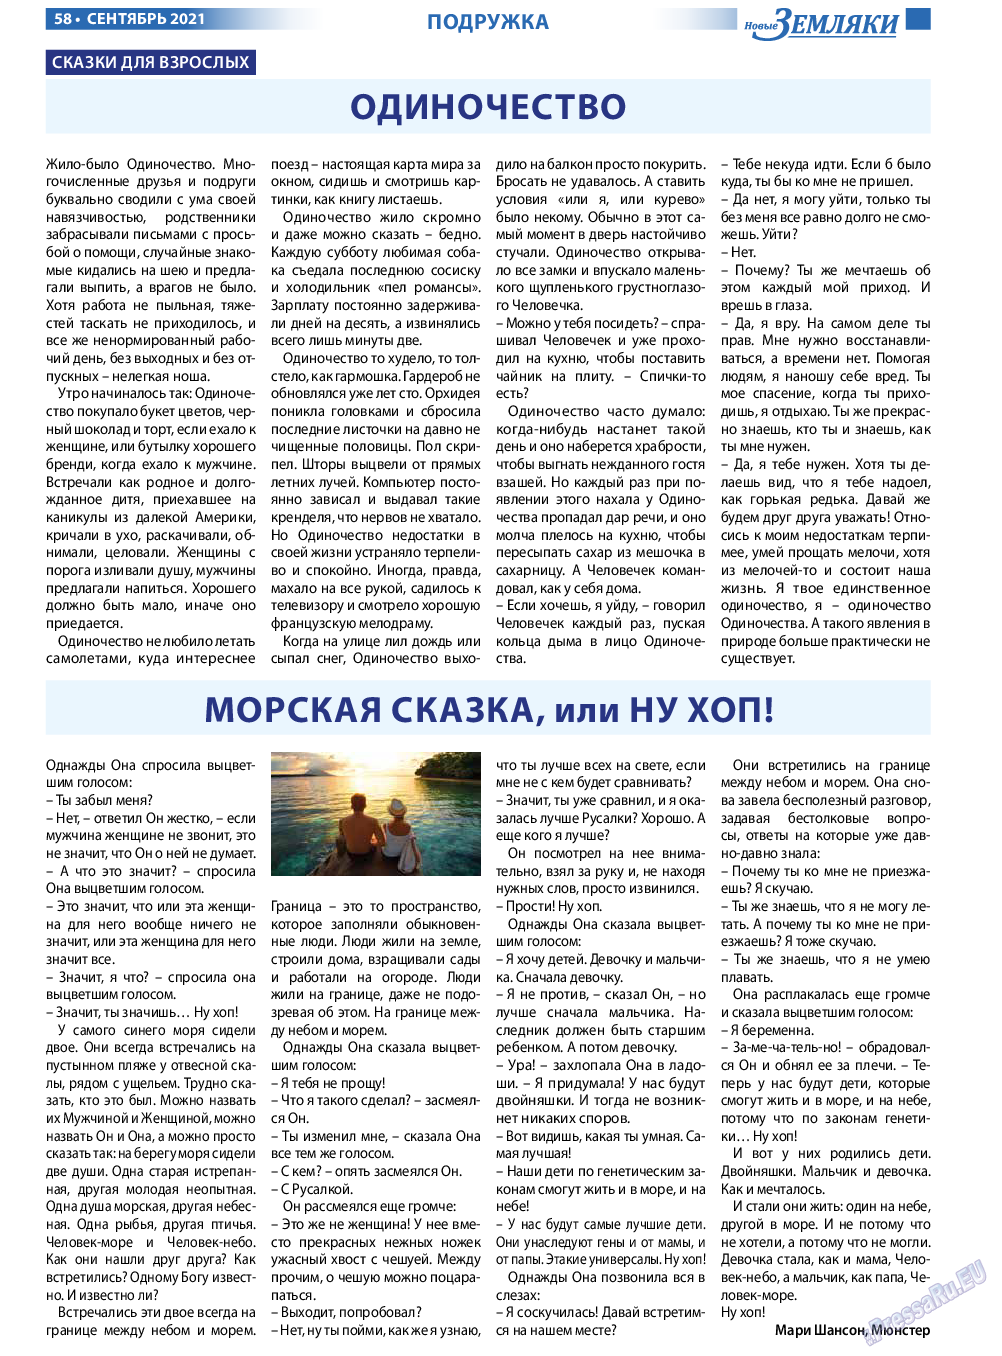 Новые Земляки, газета. 2021 №9 стр.58